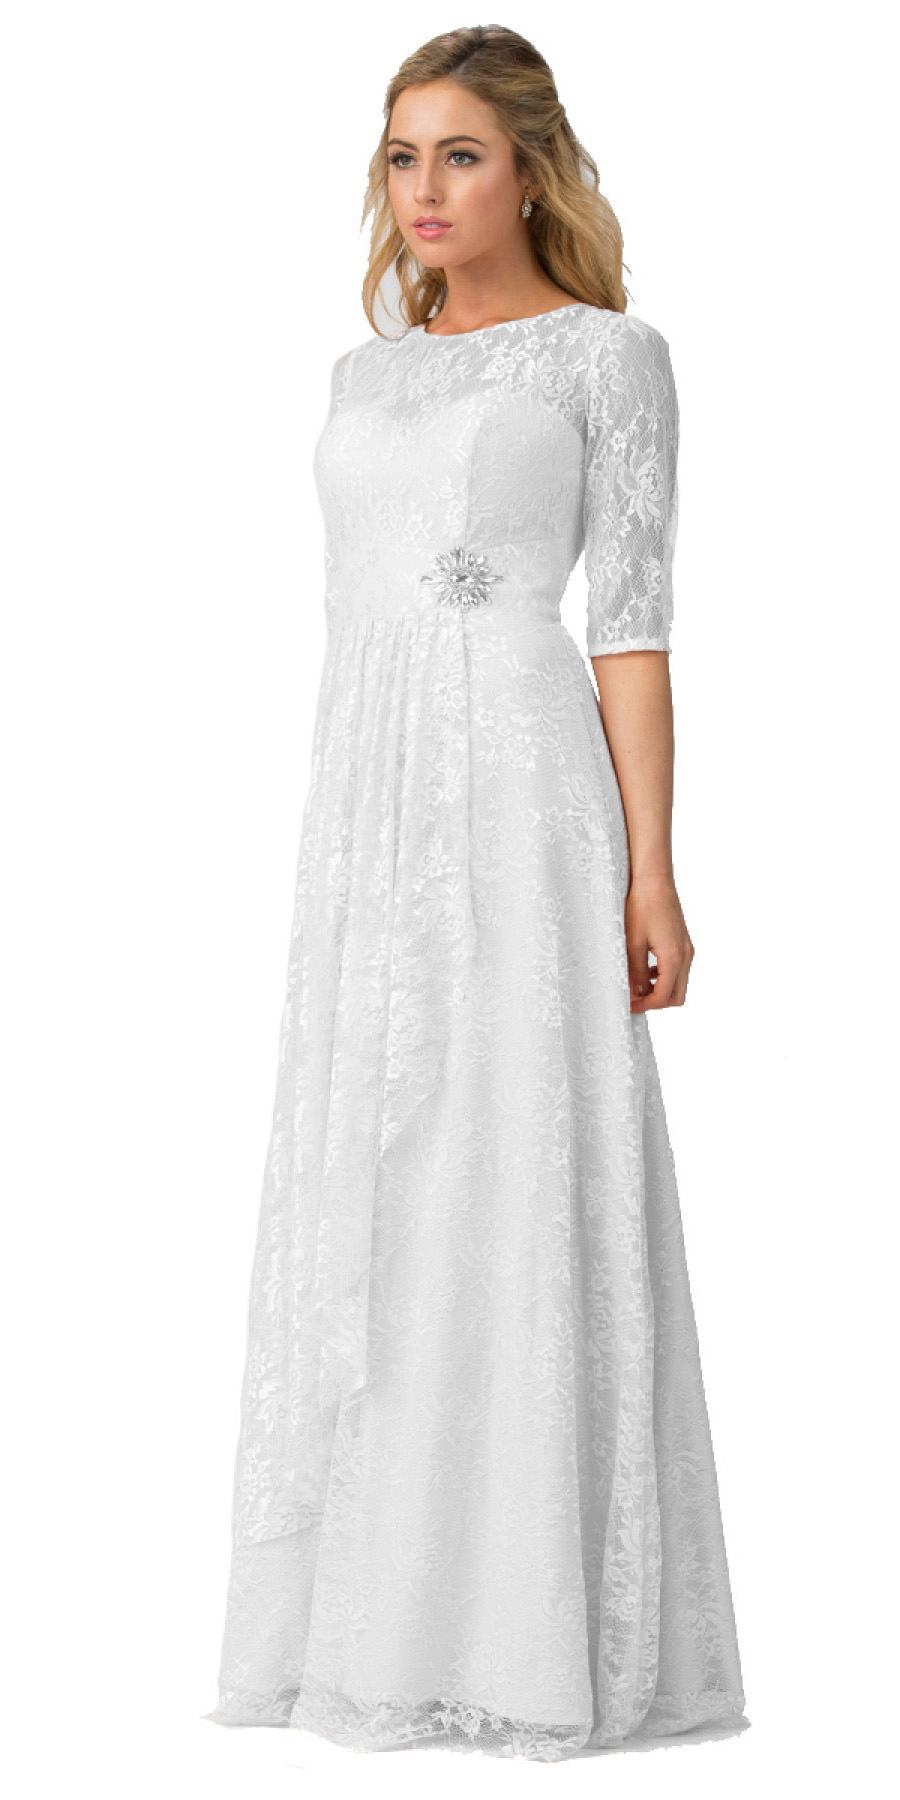 white quarter sleeve dress